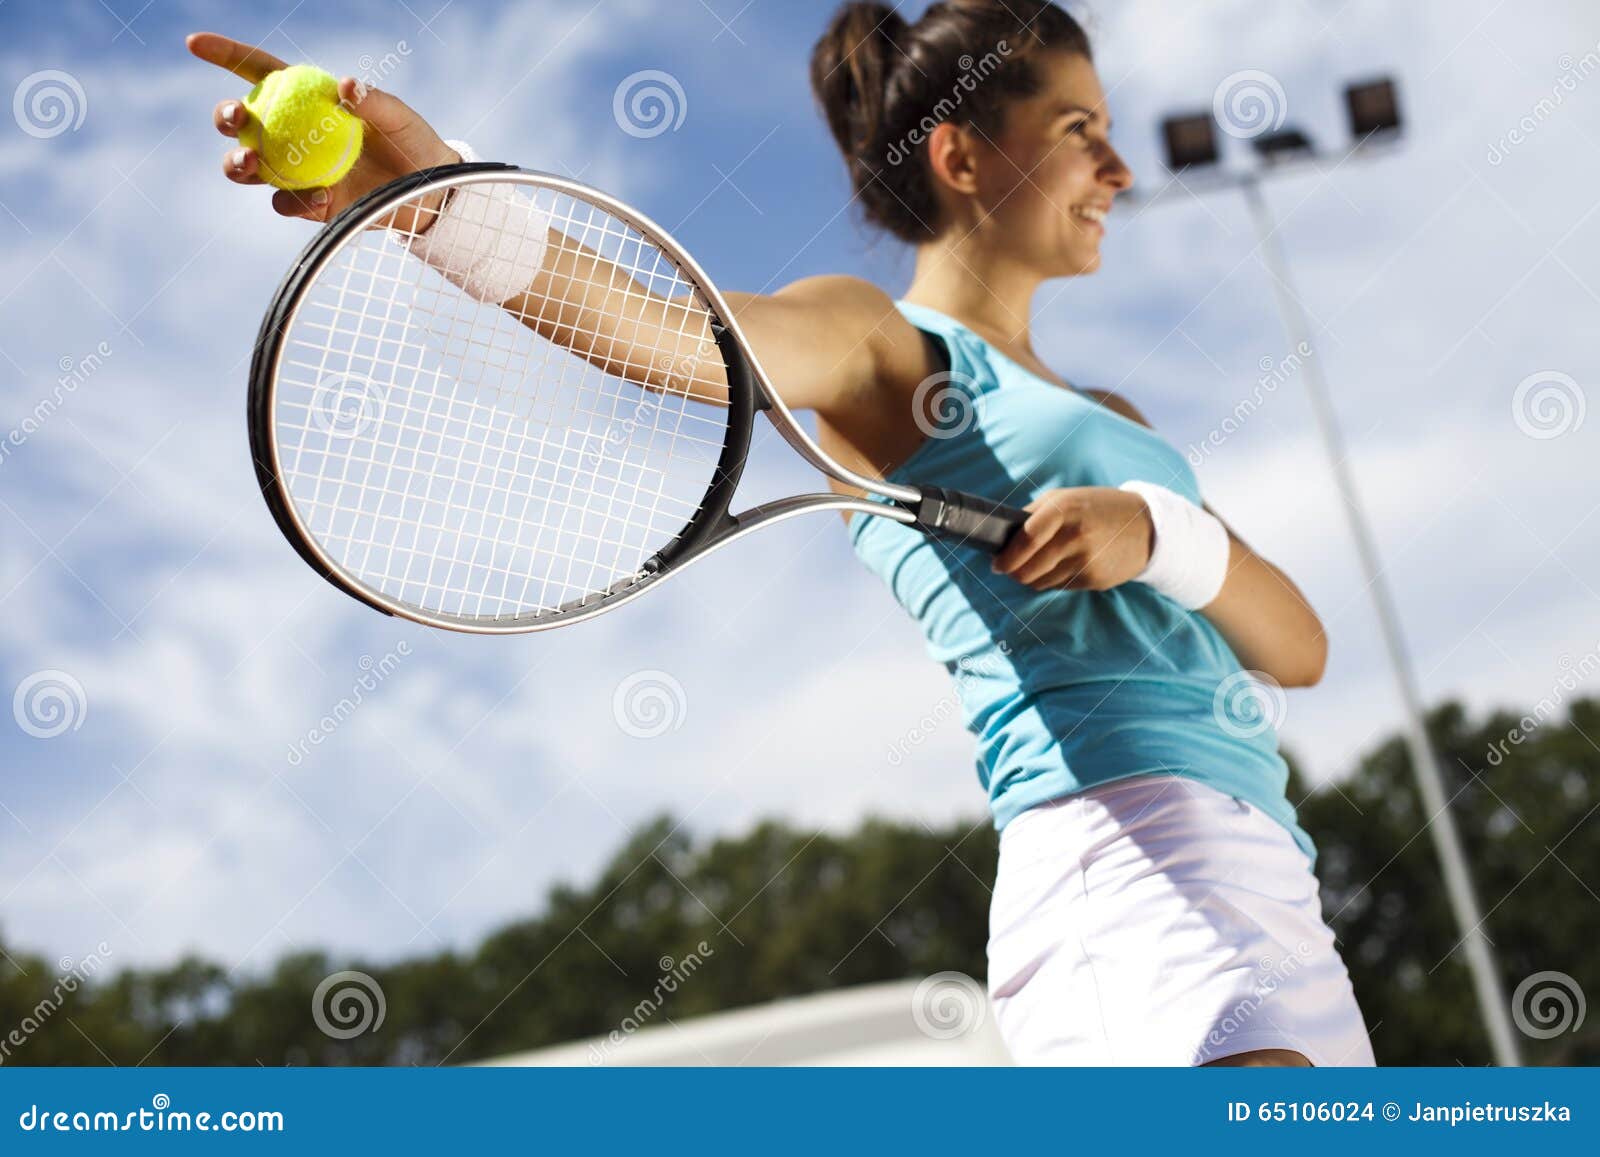 До скольки очков партия теннисе. Теннисистка в полный рост. Девушка с теннисной ракеткой. Девушка играет в теннис Сток. Девушка играет в большой теннис картинки.